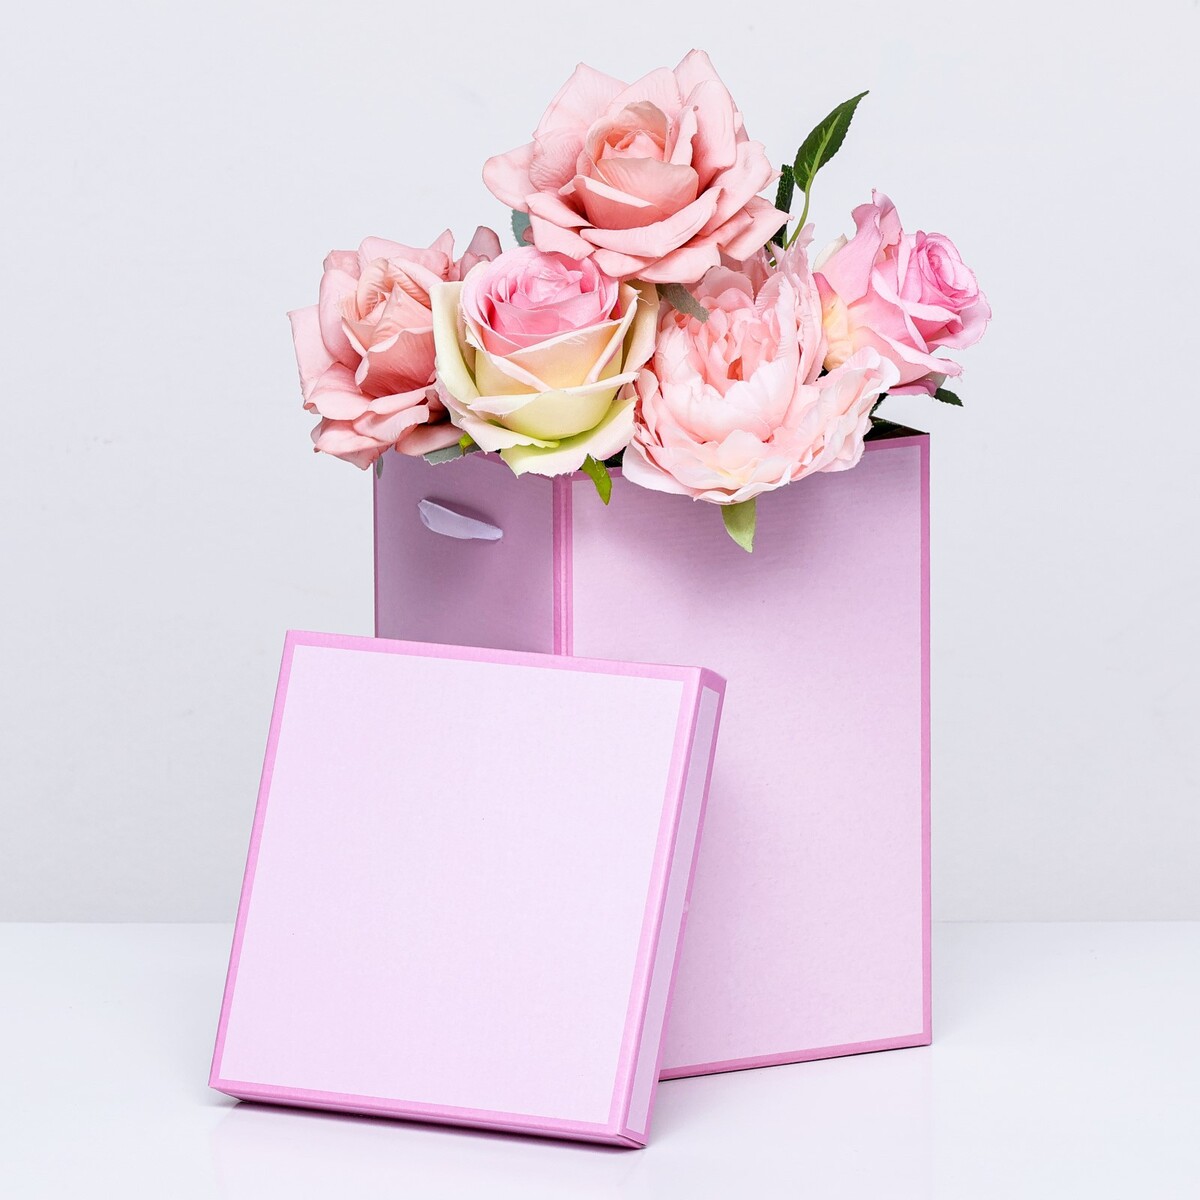 Коробка складная, розовая, 17 х 25 см коробка складная розовая 17 х 25 см